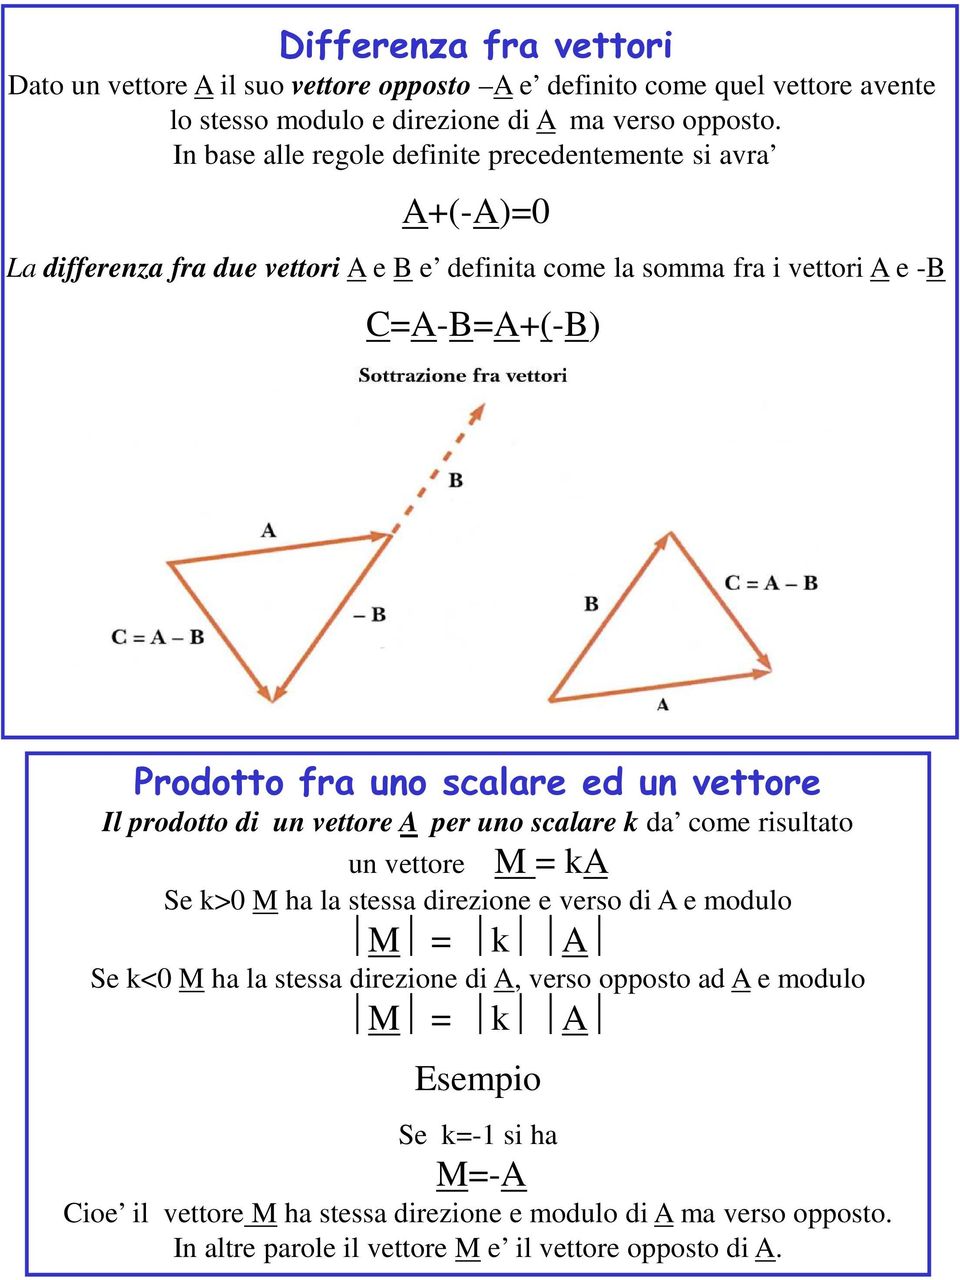 scalare ed un vettore Il prodotto di un vettore A per uno scalare k da come risultato un vettore M = ka Se k>0 M ha la stessa direzione e verso di A e modulo M = k A Se k<0 M ha